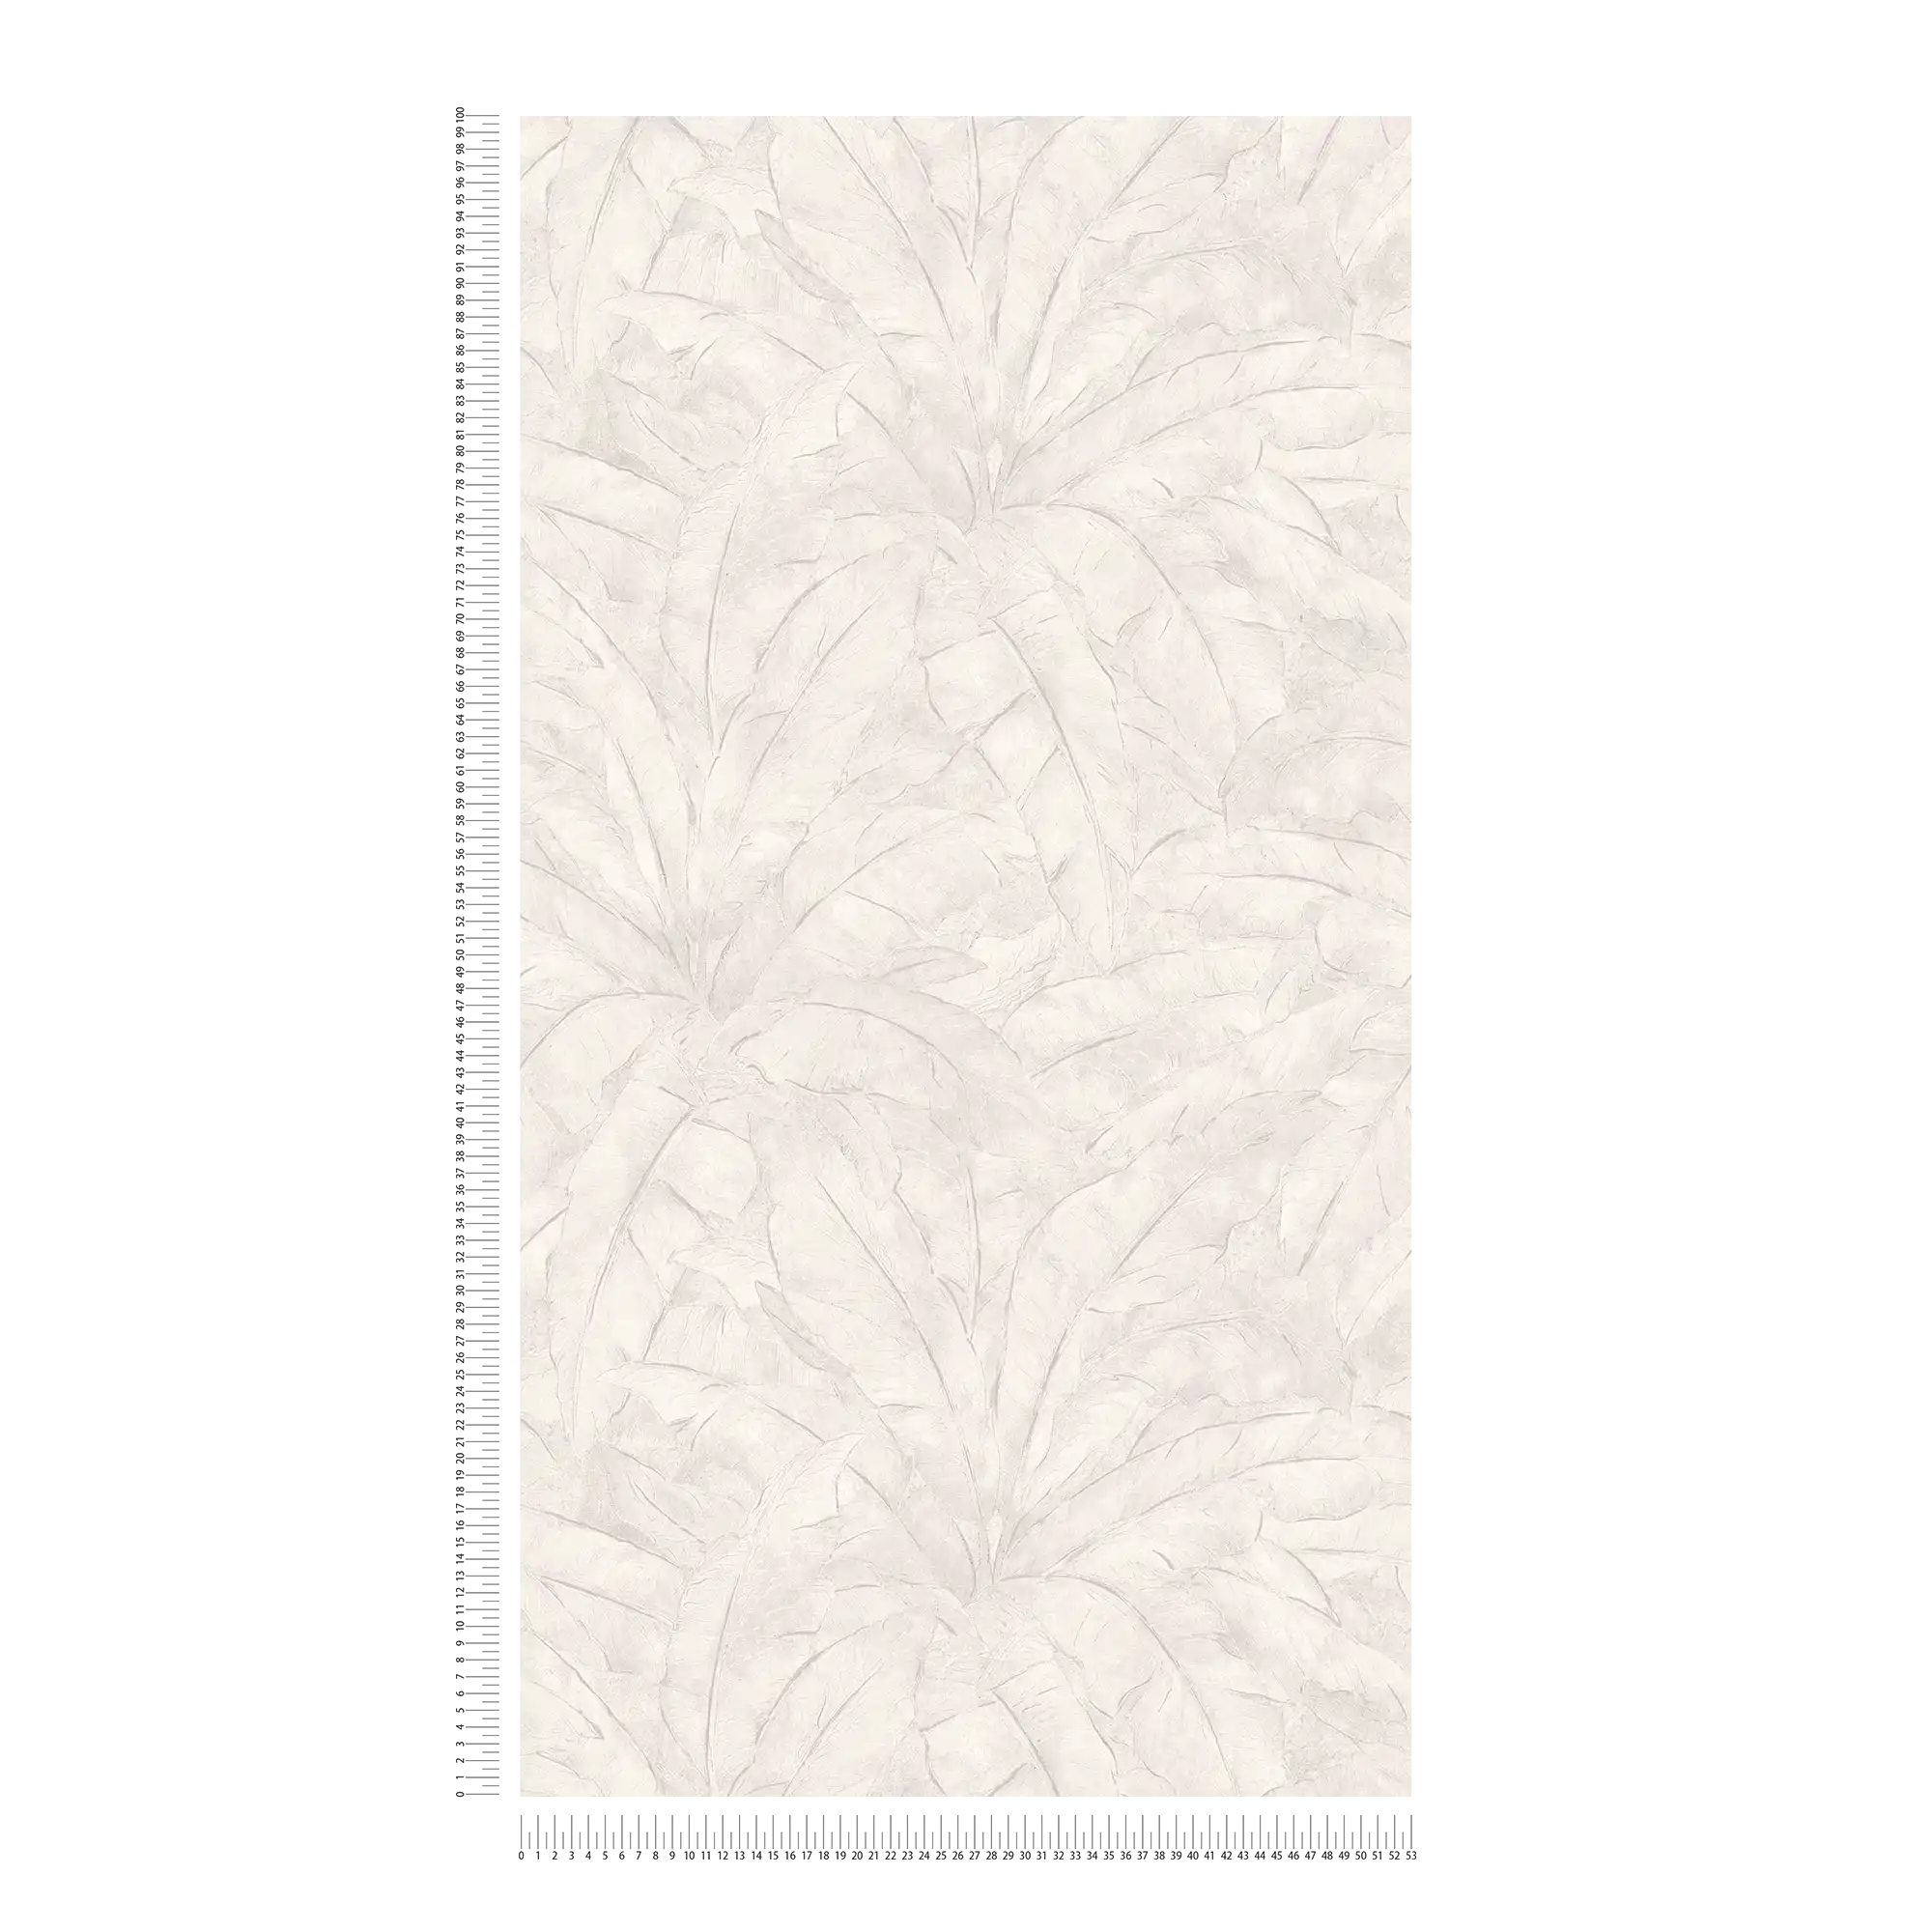             Dschungel Tapete mit Silber Akzent – Grau, Silber, Weiß
        